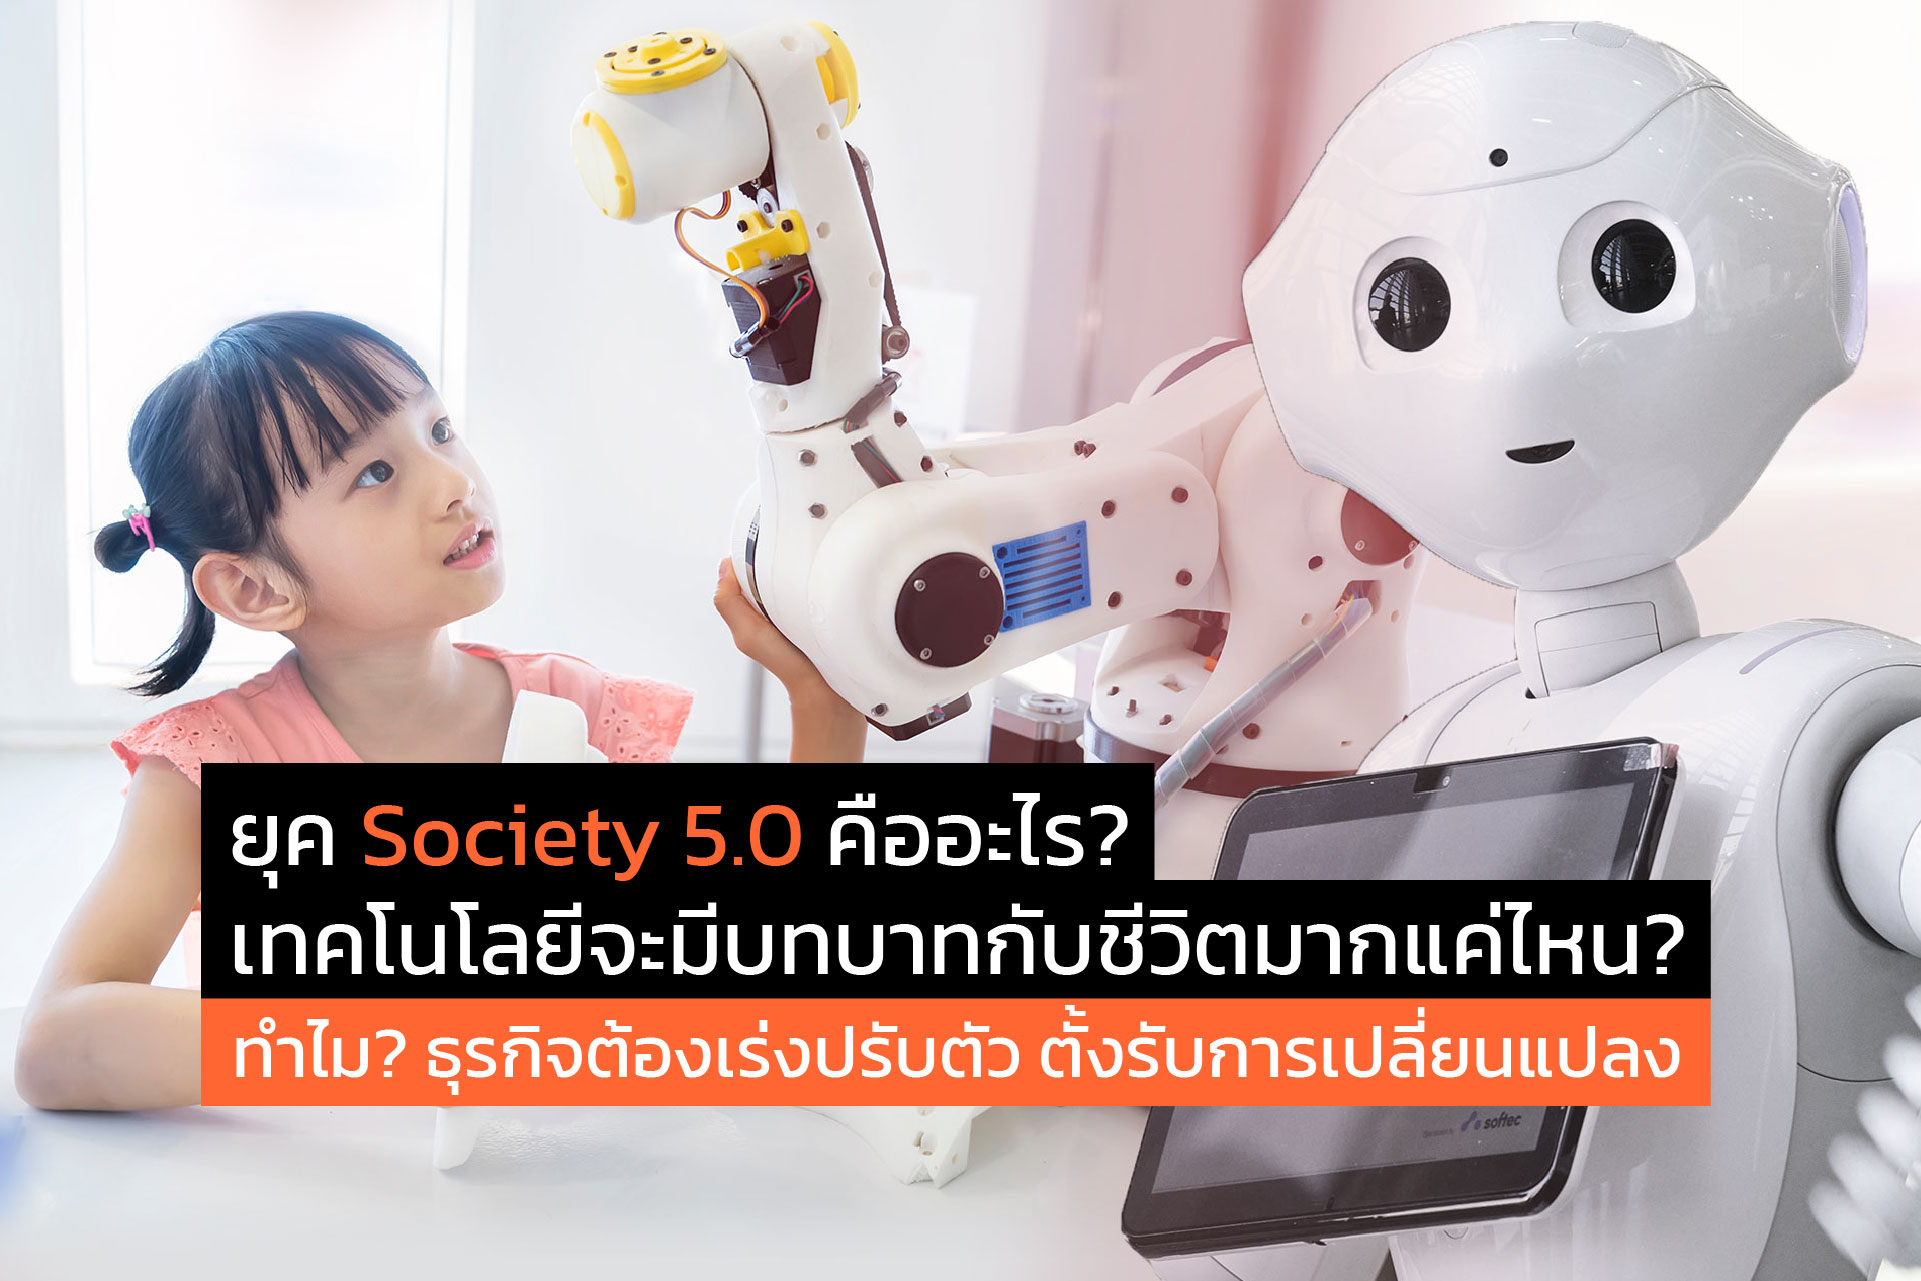 ยุค Society 5.0 คืออะไร? เทคโนโลยีจะมีบทบาทกับชีวิตมากแค่ไหน? ทำไม? ธุรกิจต้องเร่งปรับตัว ตั้งรับการเปลี่ยนแปลง